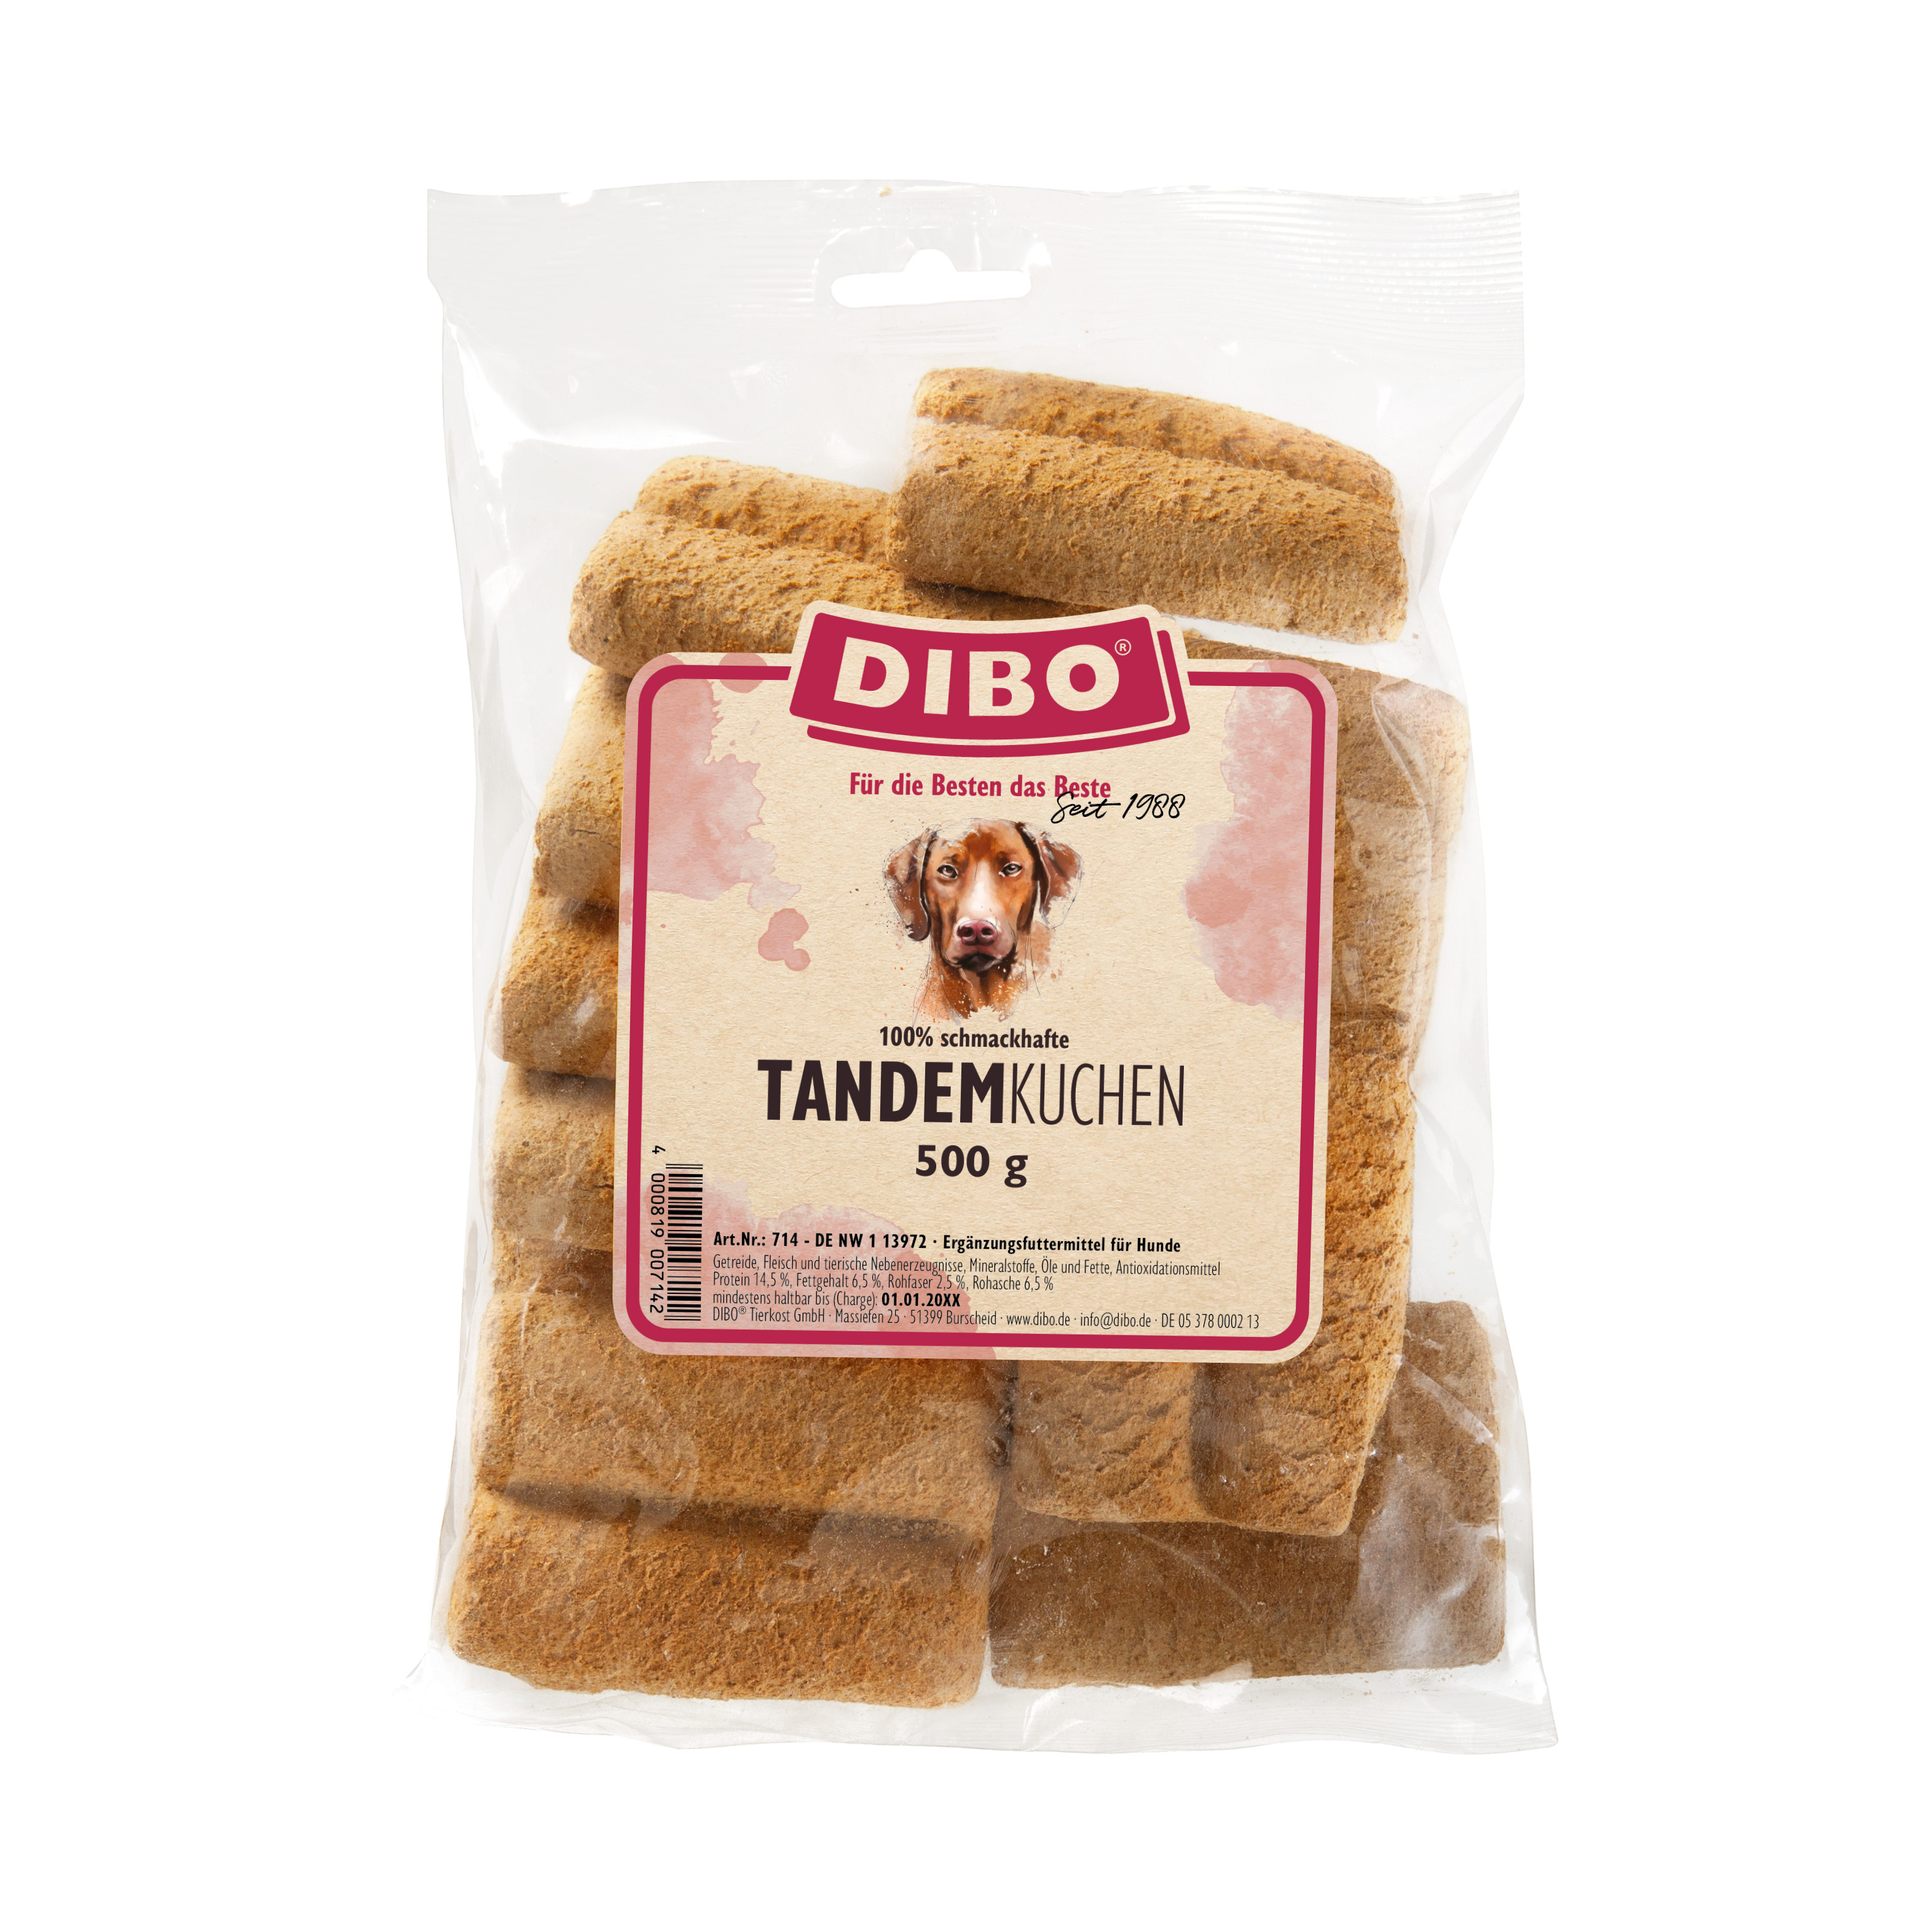 DIBO Tandem-Kuchen, 500g-Beutel